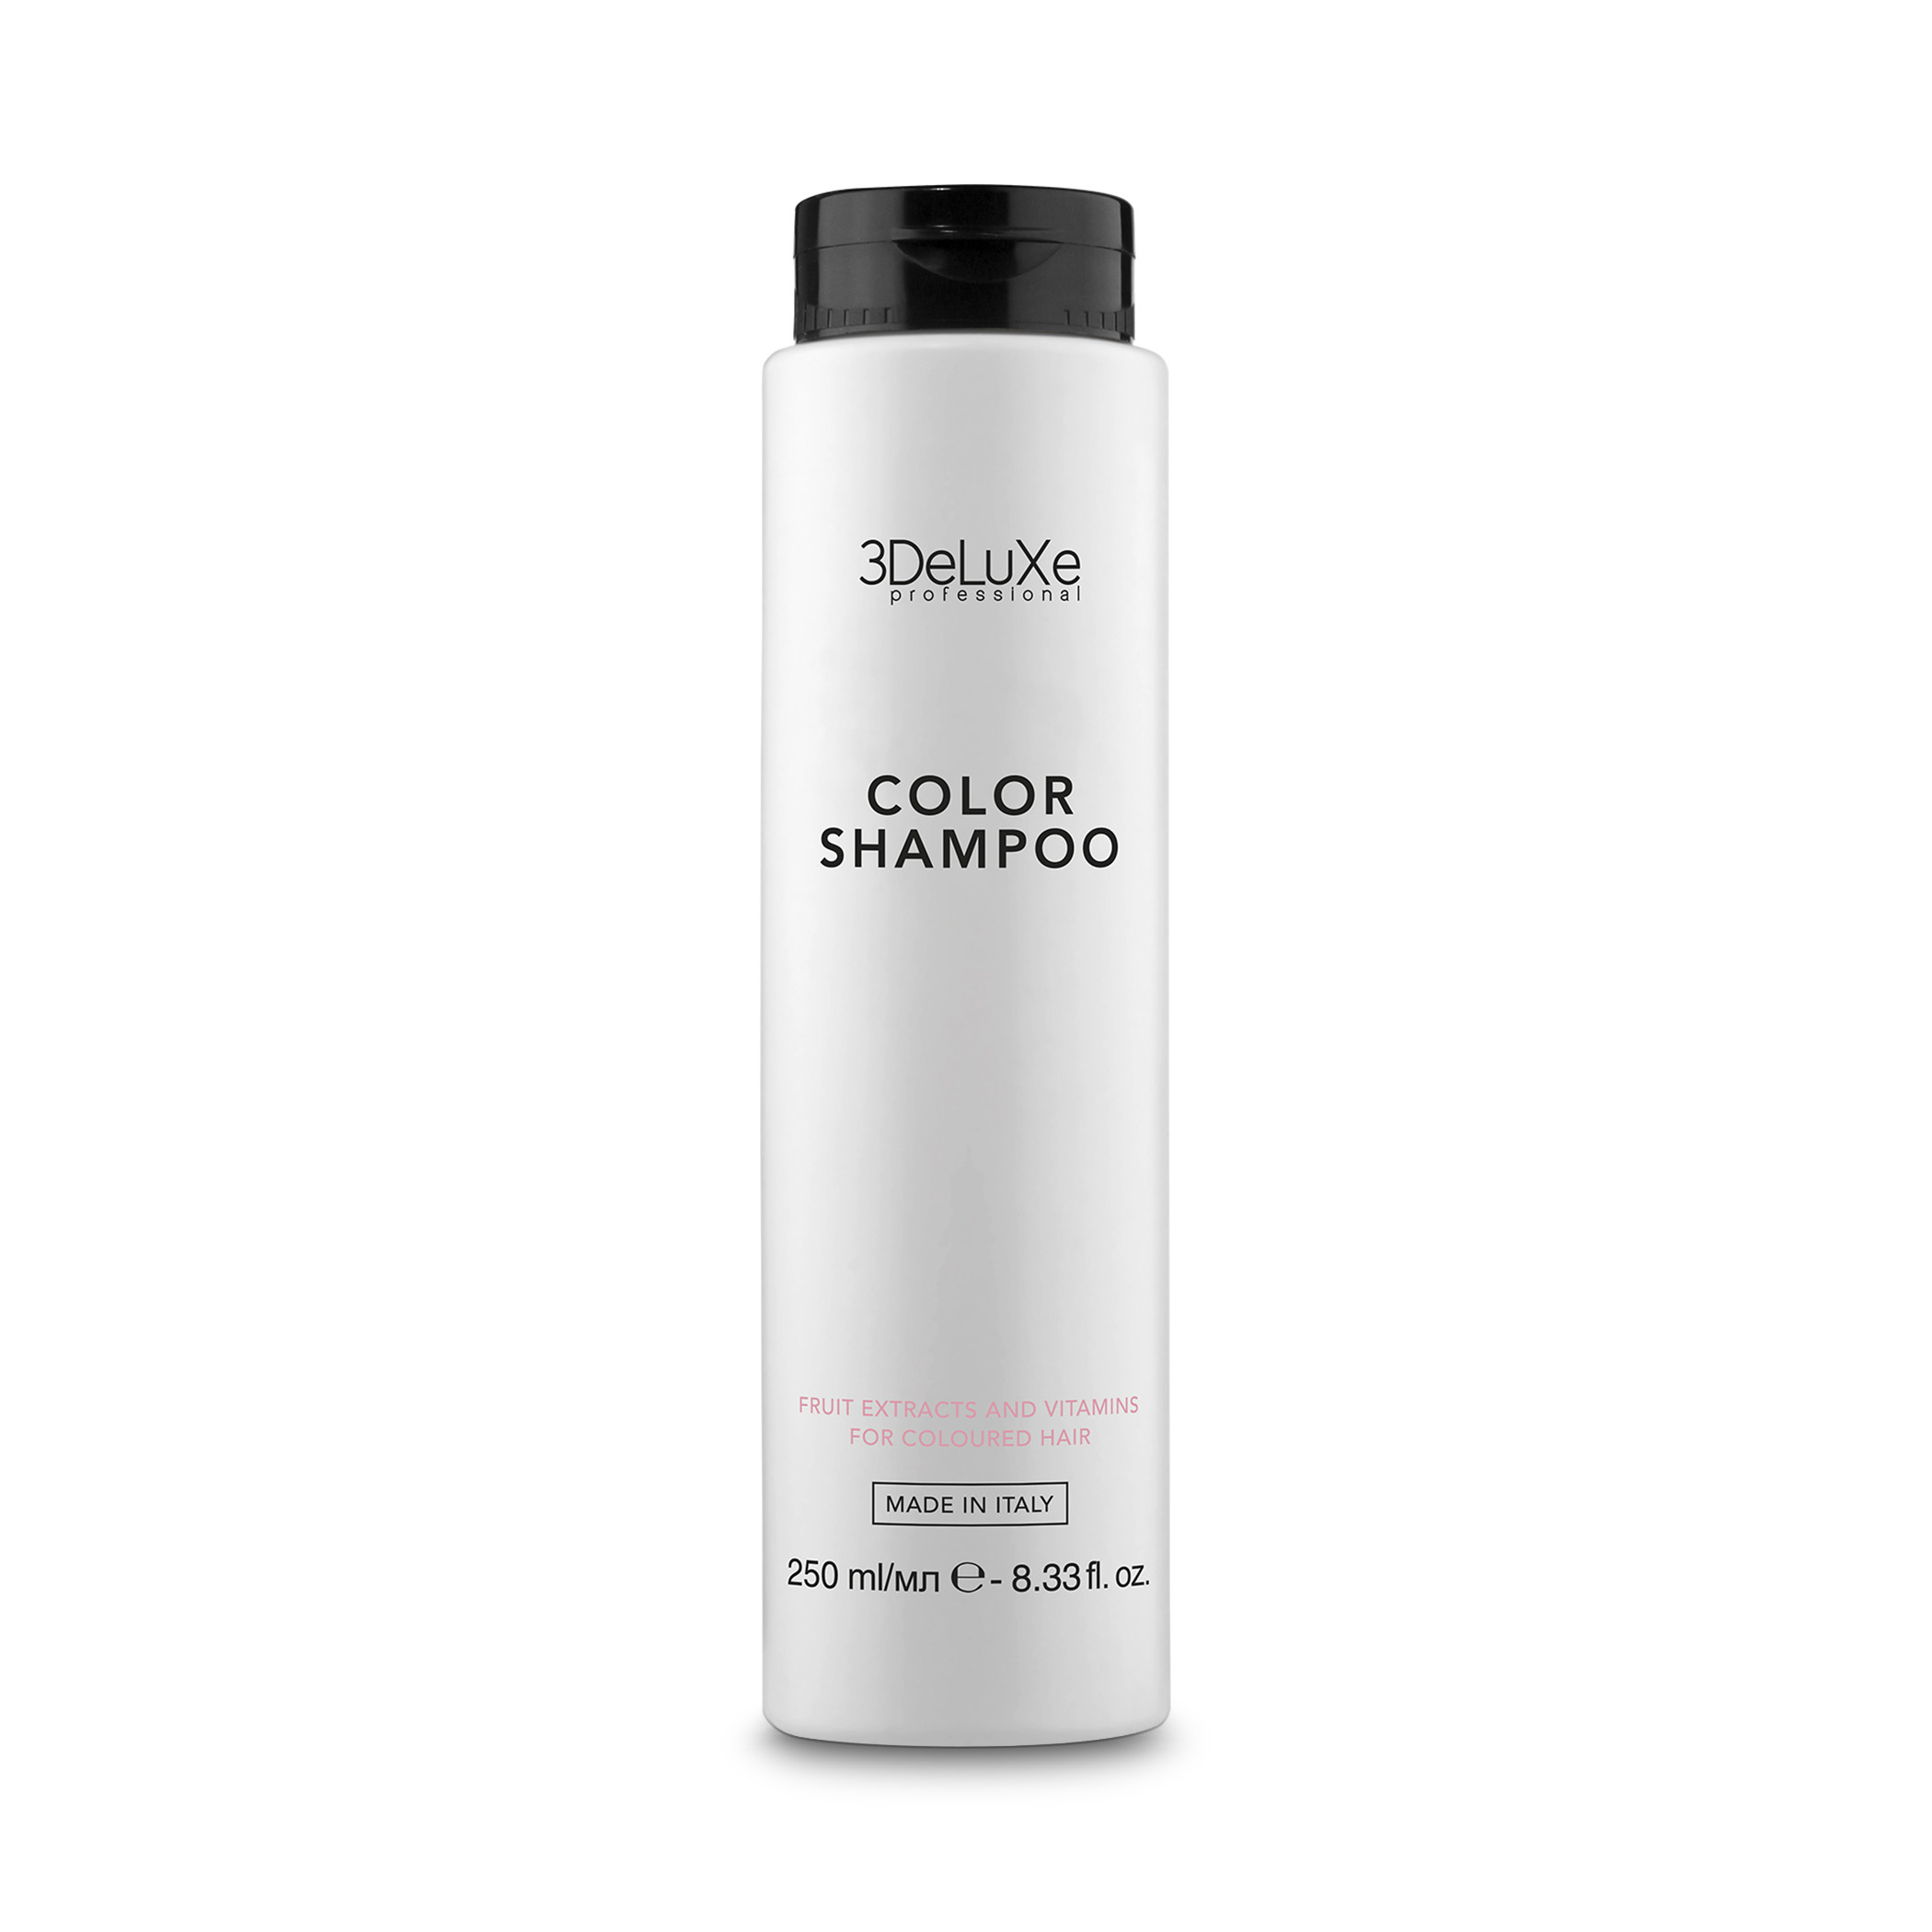 3Deluxe Professional Шампунь для окрашенных волос Shampoo Color, 250 мл купить